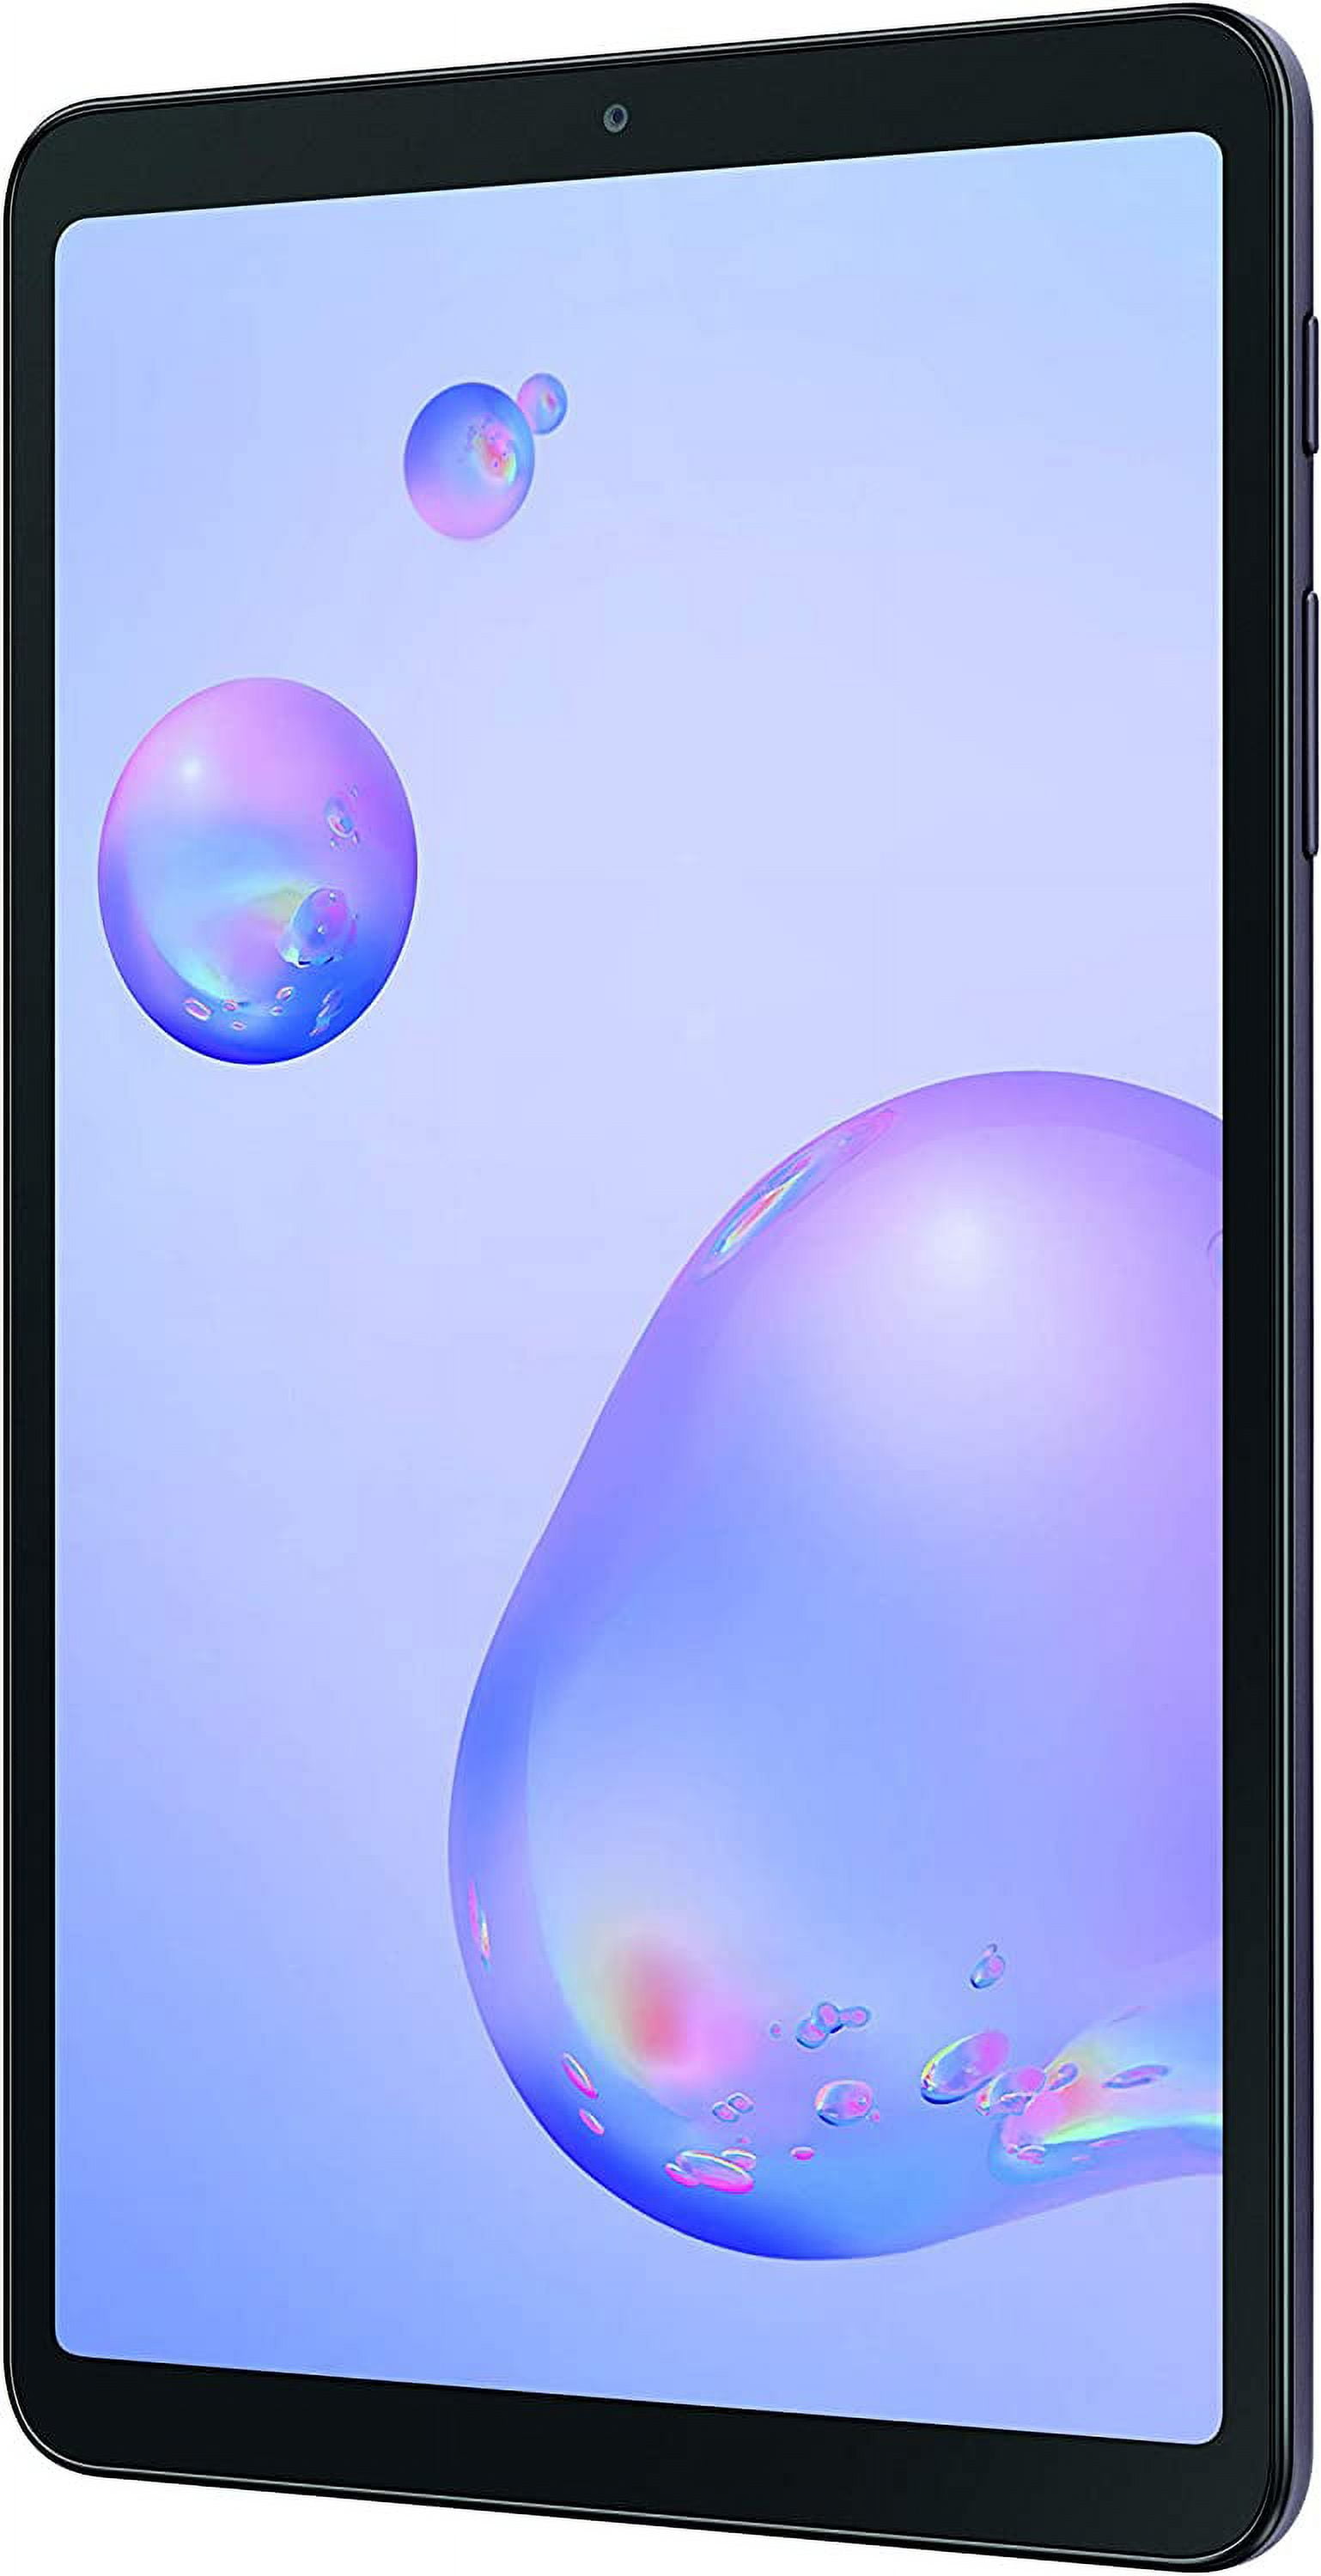 Samsung Galaxy Tab A SM-T307 Tablet, 8.4